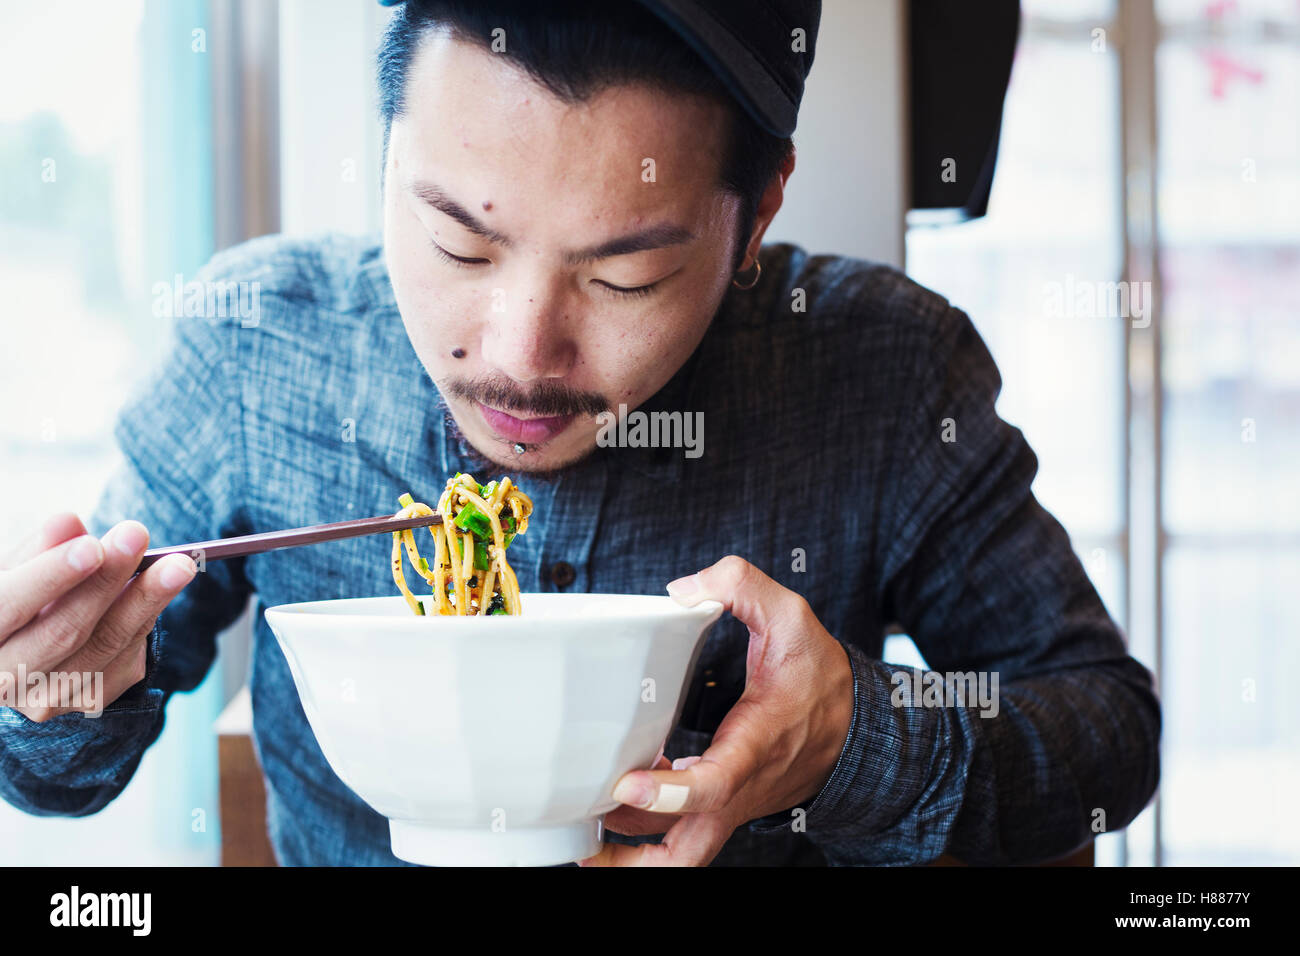 Ein Ramen-Nudel-Café in einer Stadt.  Ein Mann sitzt Essen Ramen-Nudeln aus einer großen Brühe Schüssel. Stockfoto